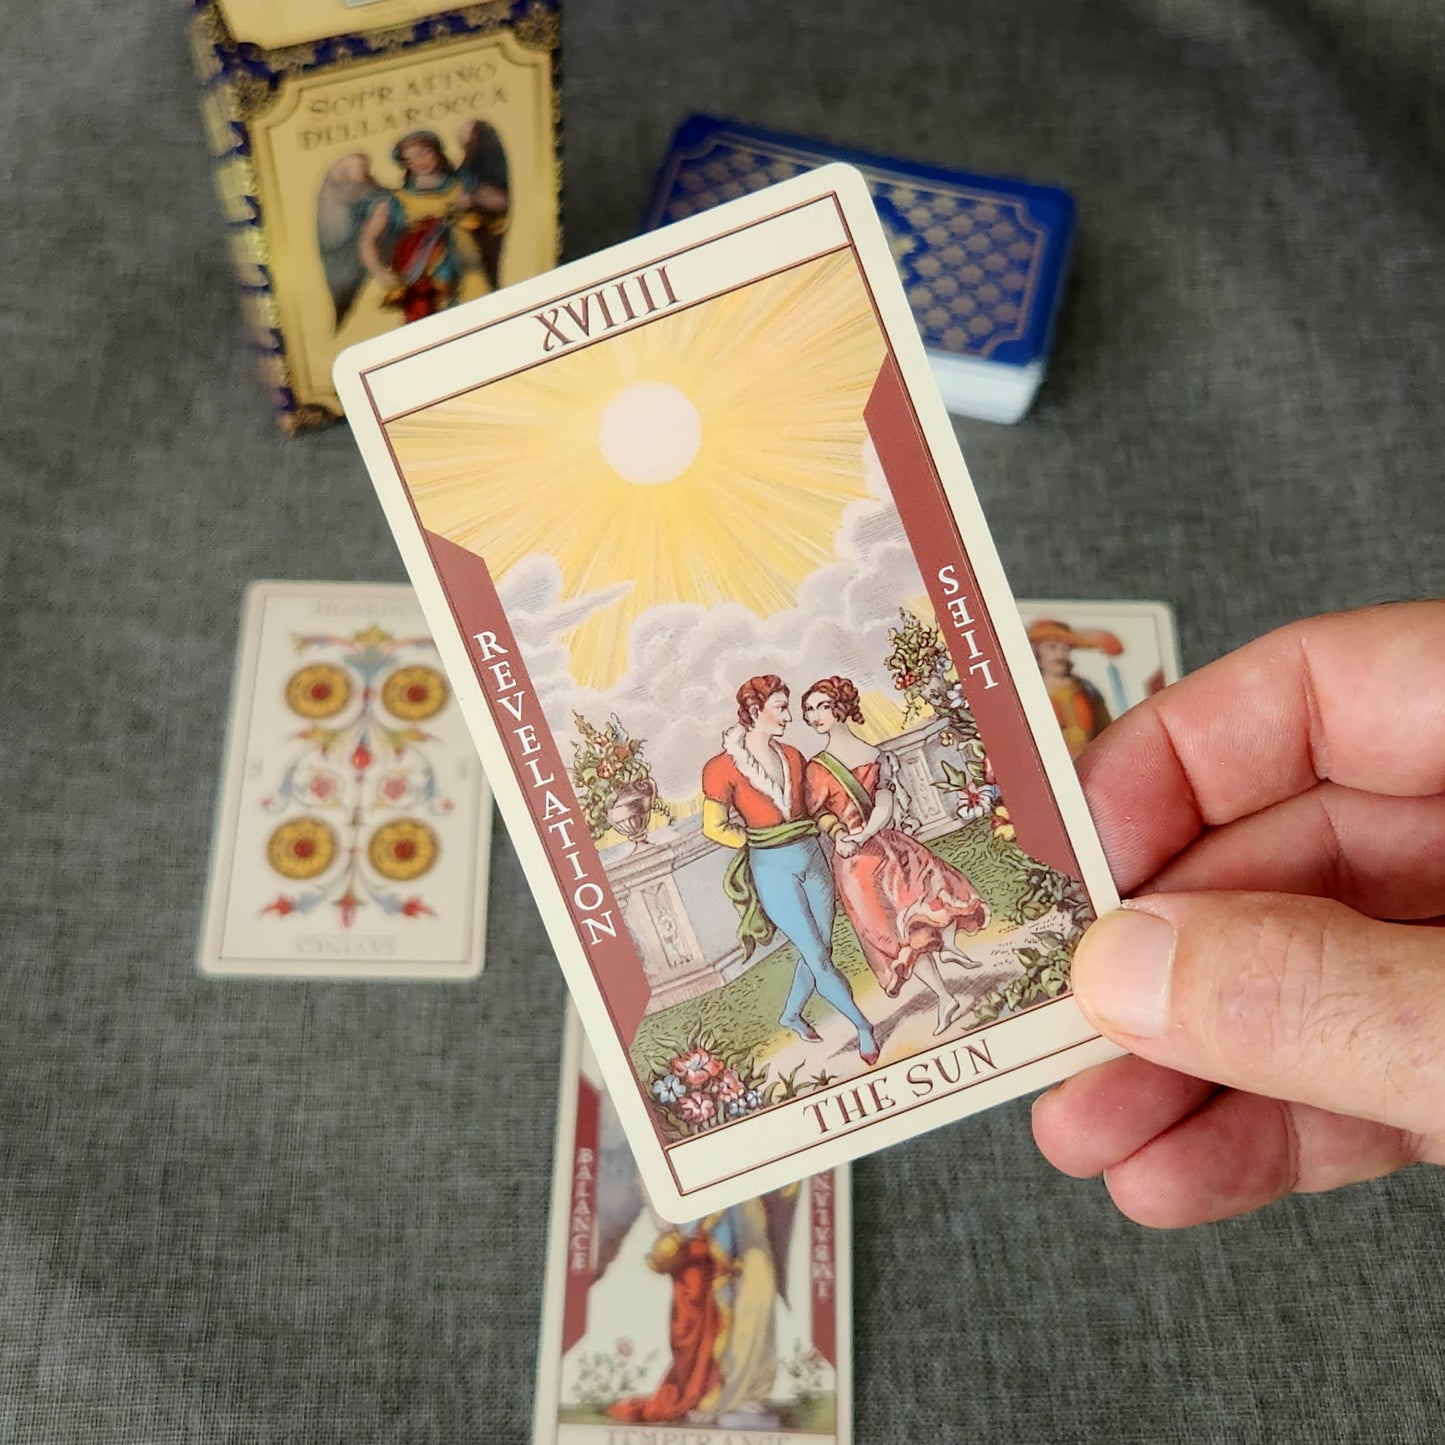 Soprafino Dellarocca Tarot Cards Deck